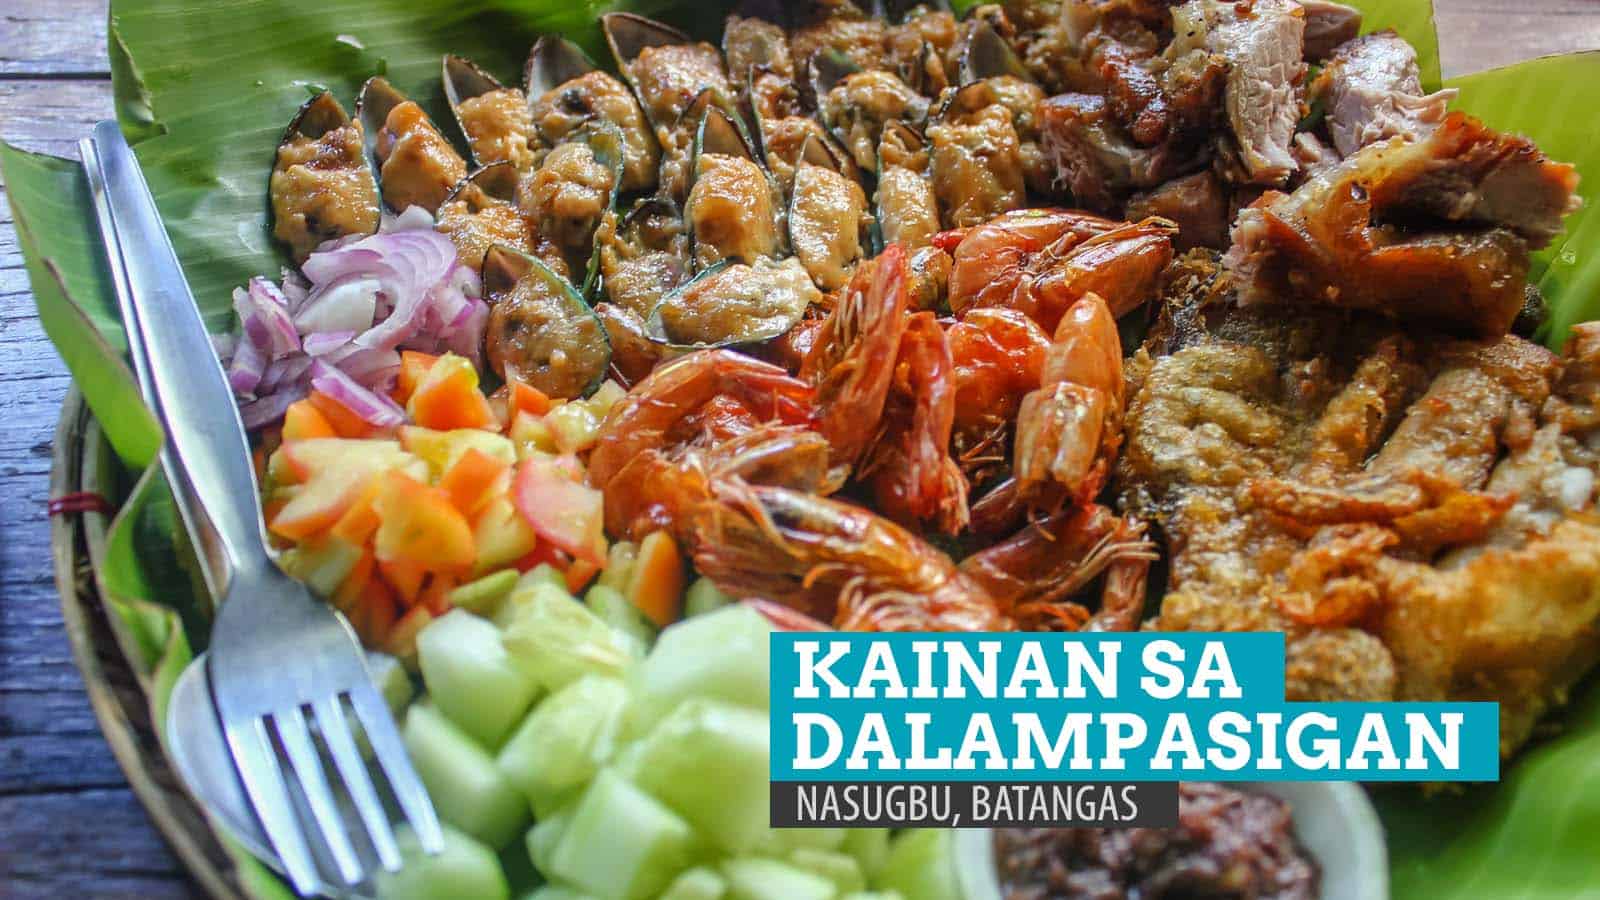 KAINAN SA DALAMPASIGAN: Where to Eat in Nasugbu, Batangas | The Poor ...